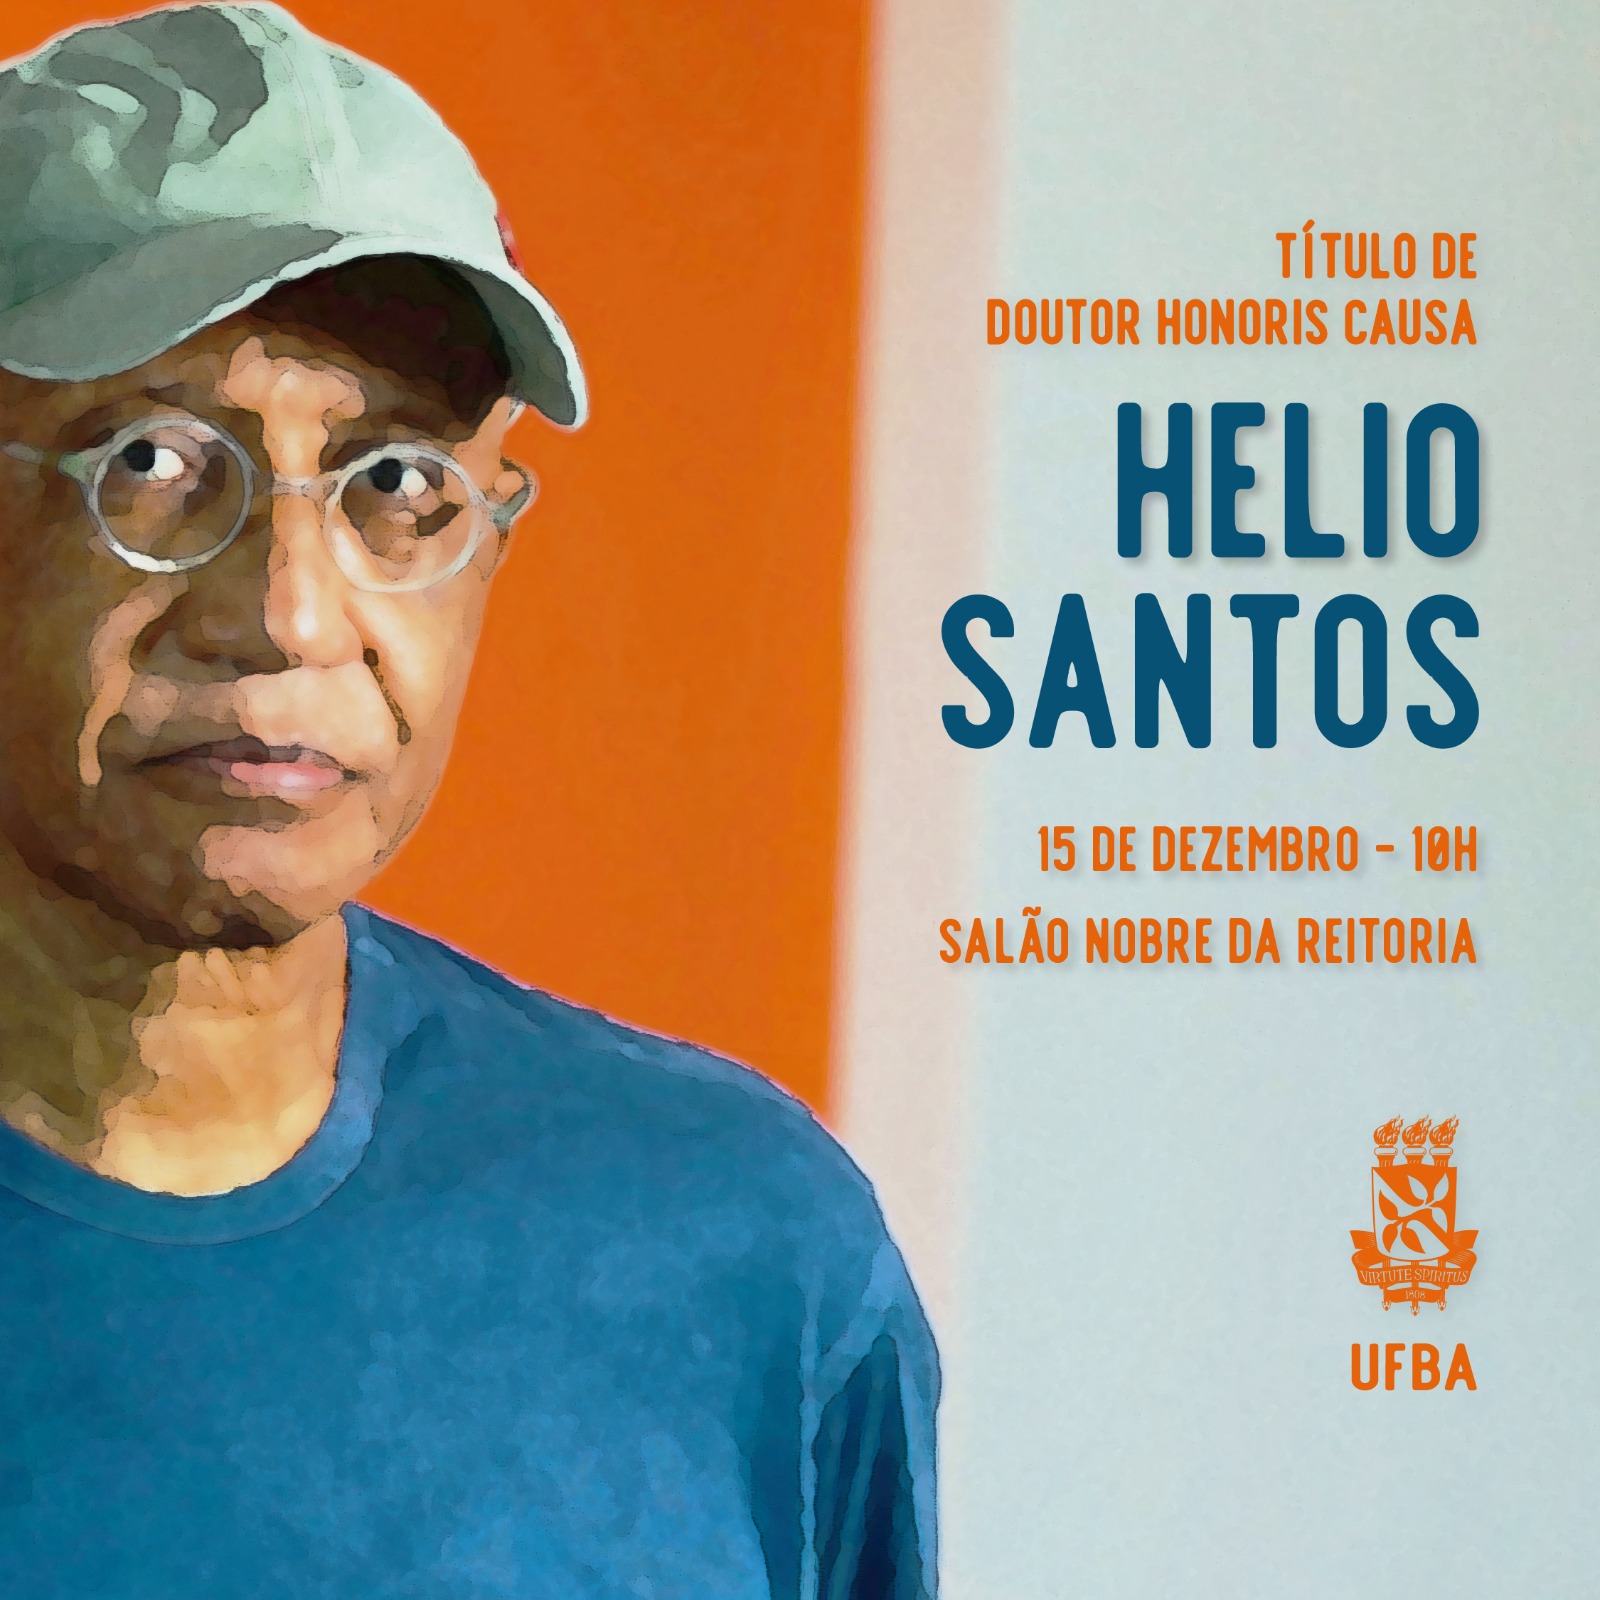 Helio Santos - Doutor Honoris Causa